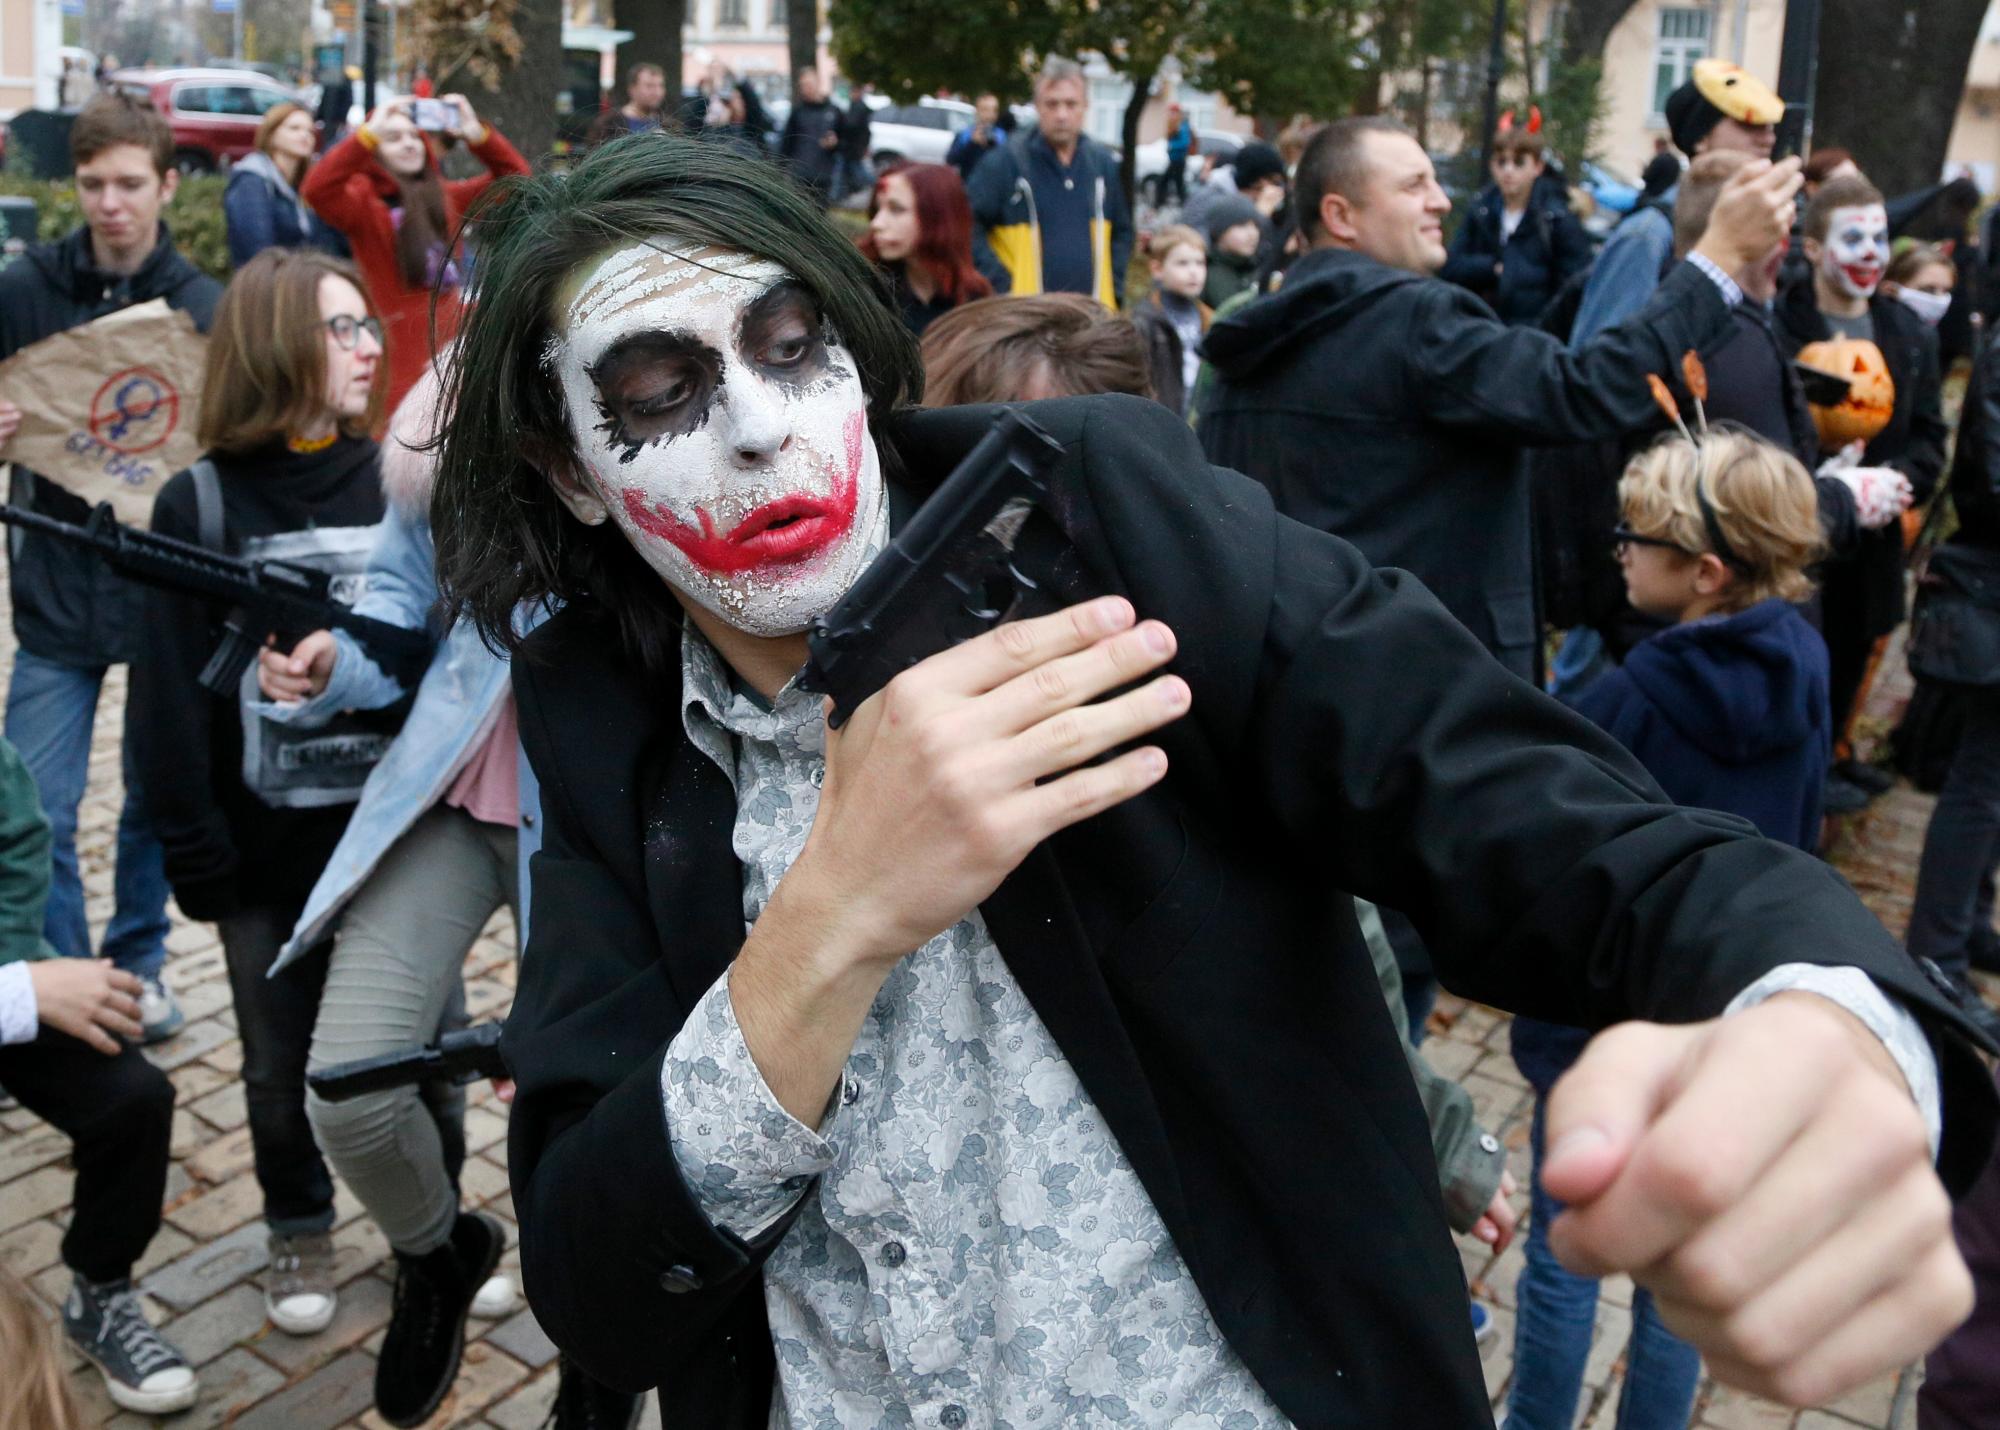 Una persona vestida como un zombi posa para una foto mientras participa en una ‘Zombie Walk’ el fin de semana antes de Halloween en el centro de Kiev, Ucrania, el sábado 26 de octubre de 2019.